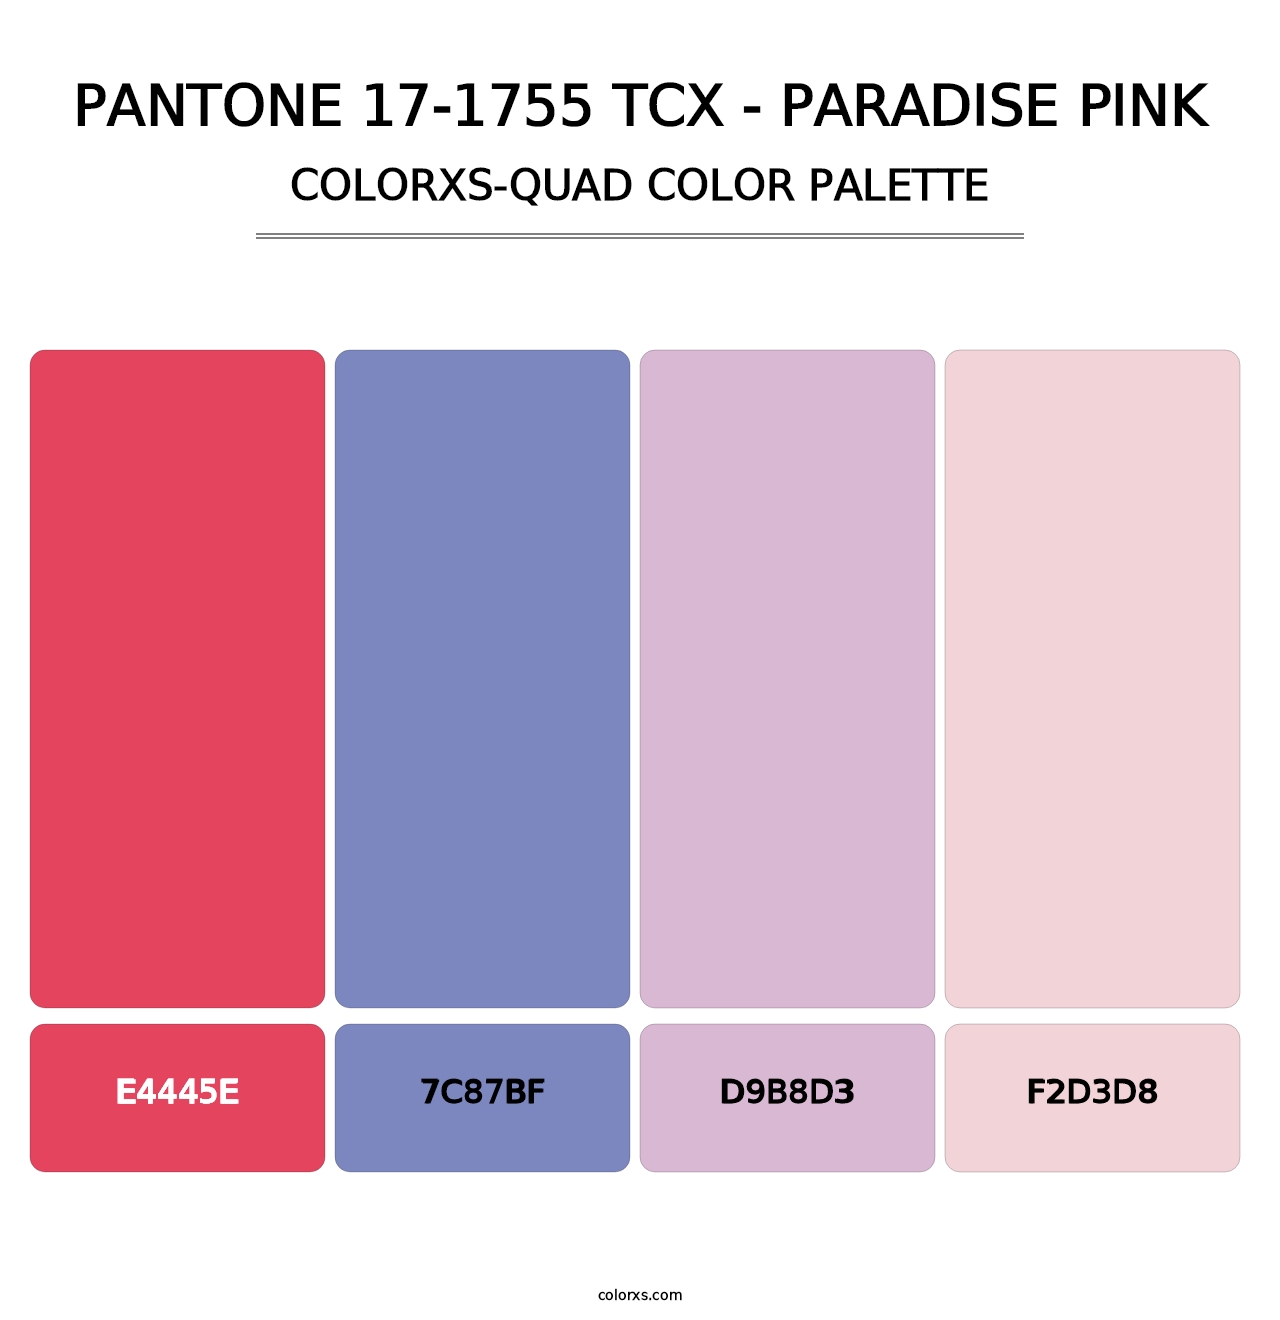 PANTONE 17-1755 TCX - Paradise Pink - Colorxs Quad Palette